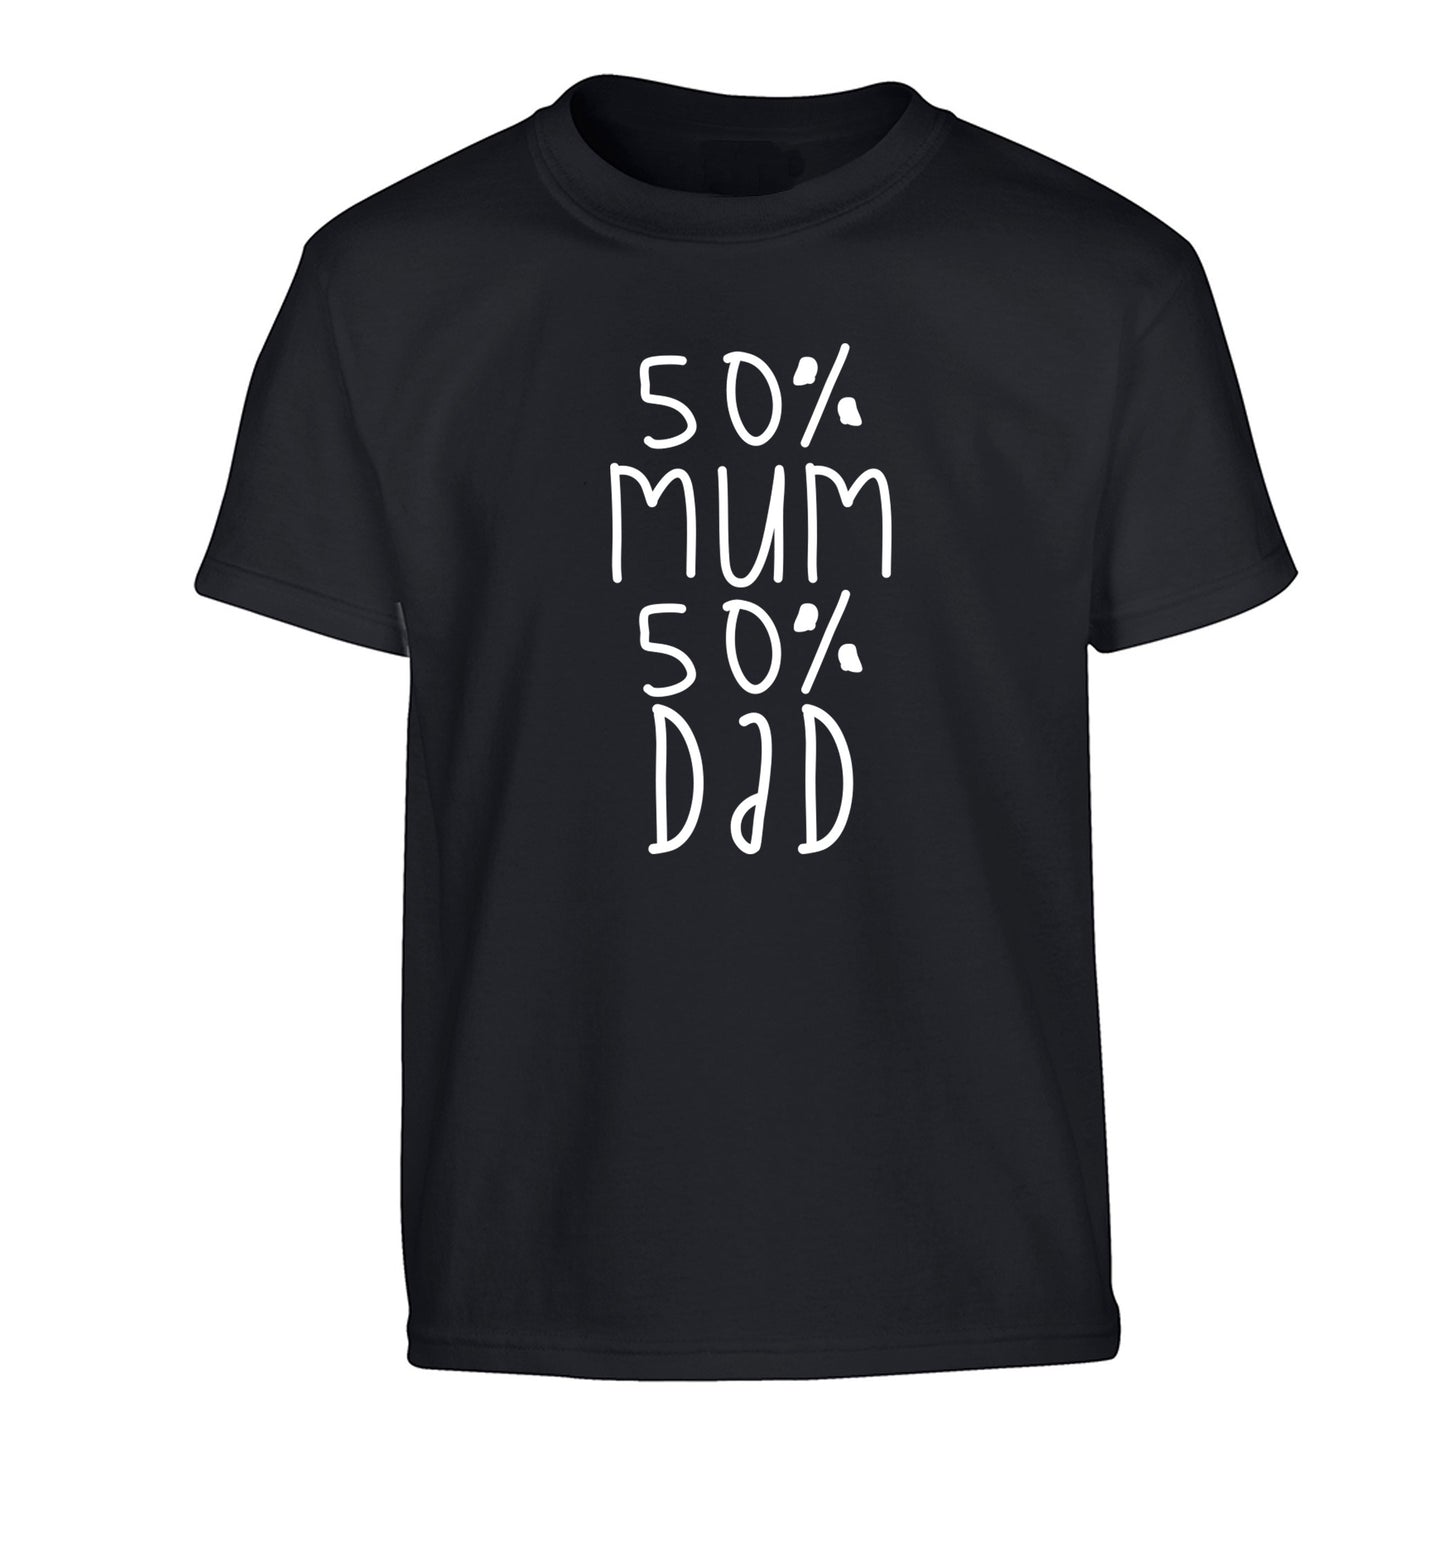 50% mum 50% dad Children's black Tshirt 12-14 Years